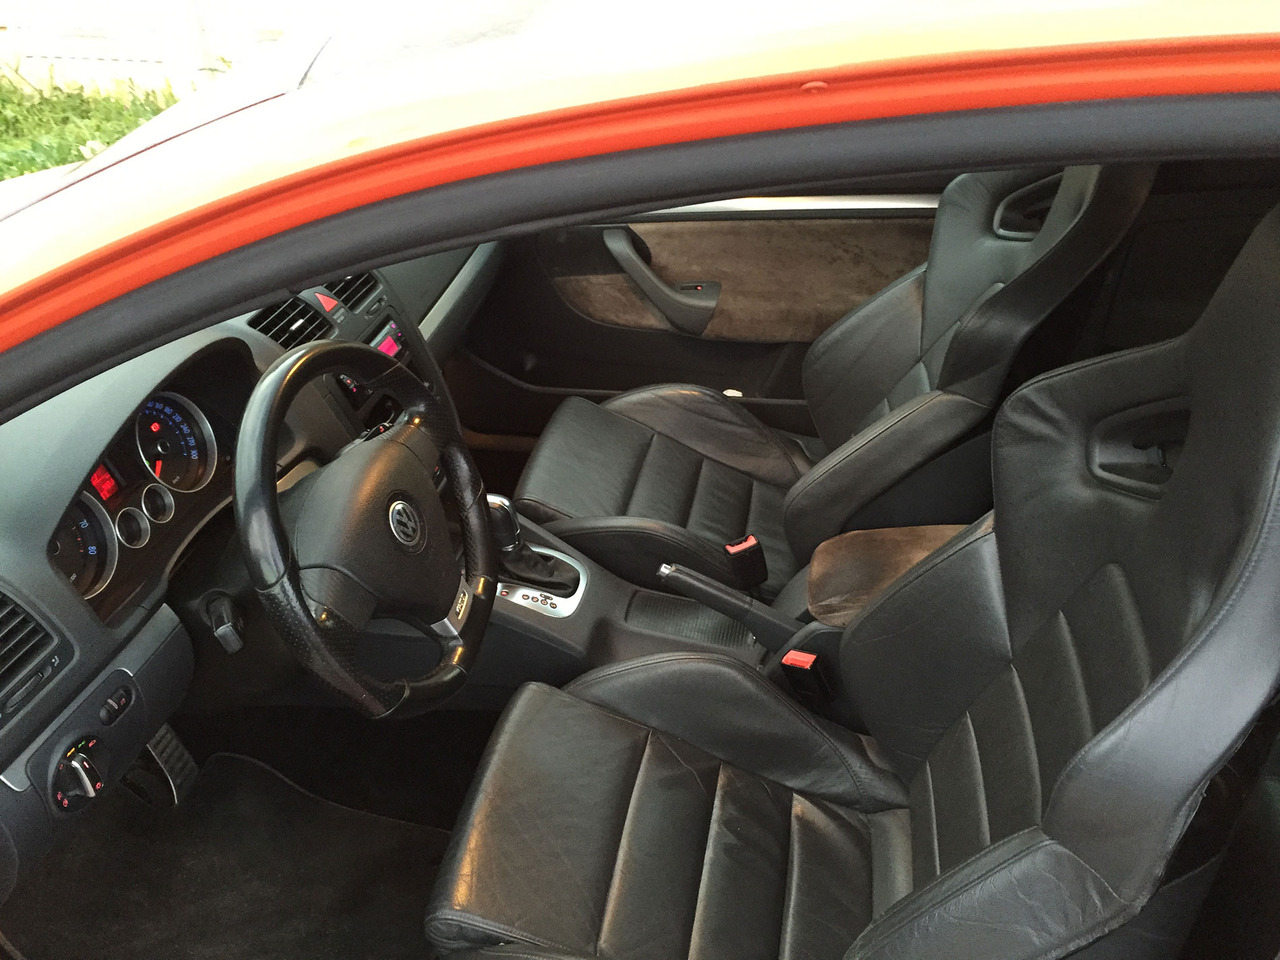 Scaune interior piele R32 golf 5 gti recaro impecabile #953854